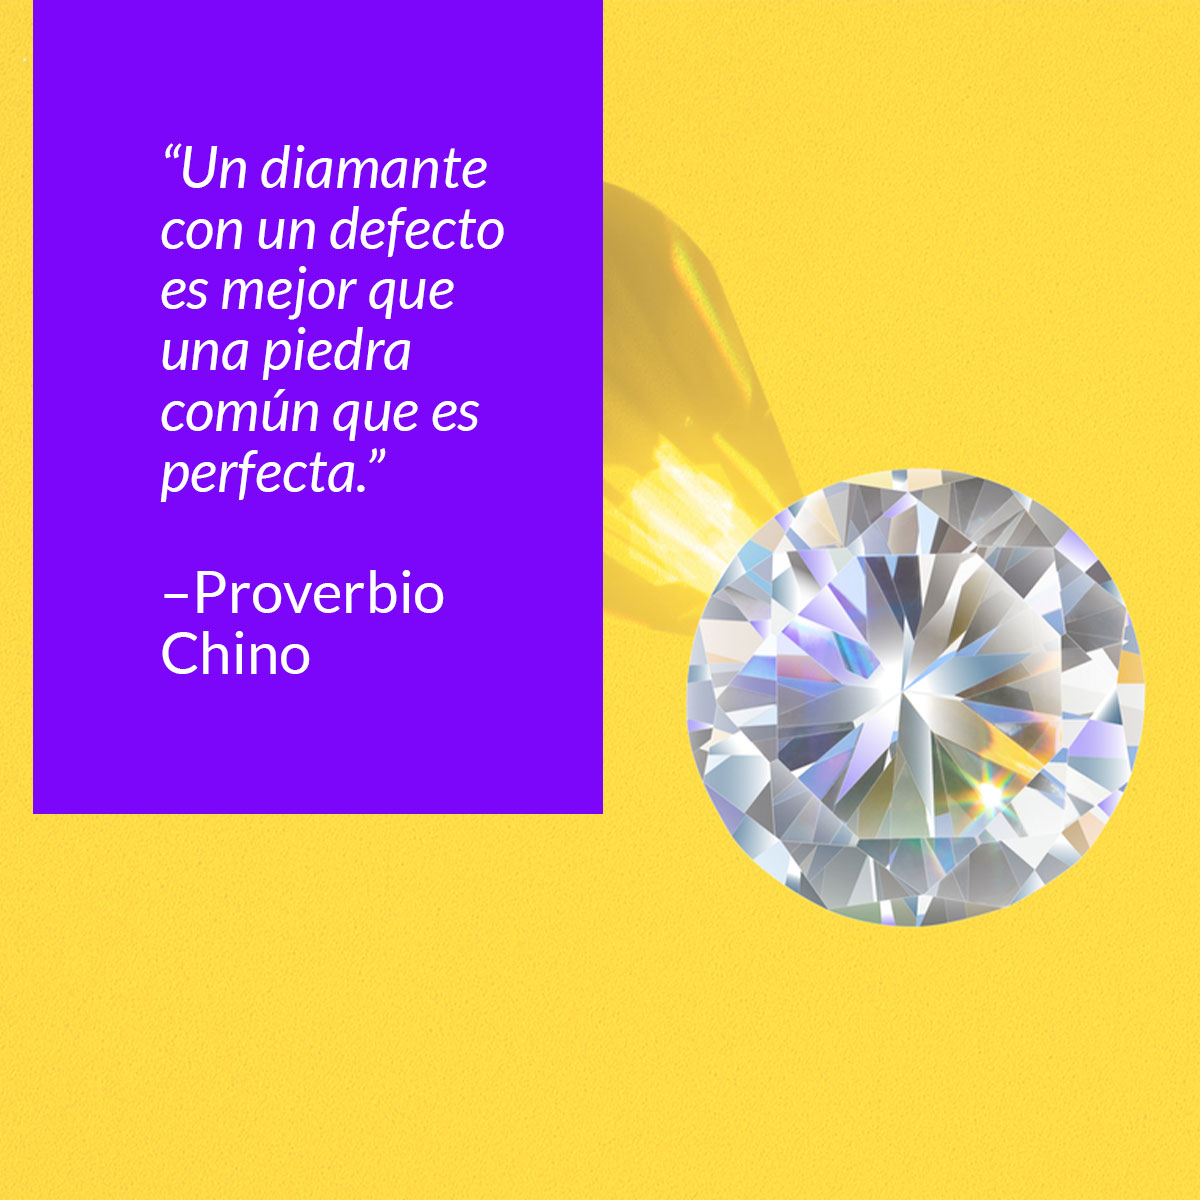 frase un diamante con un defecto es mejor que una piedra comun que es perfecta proverbio chino